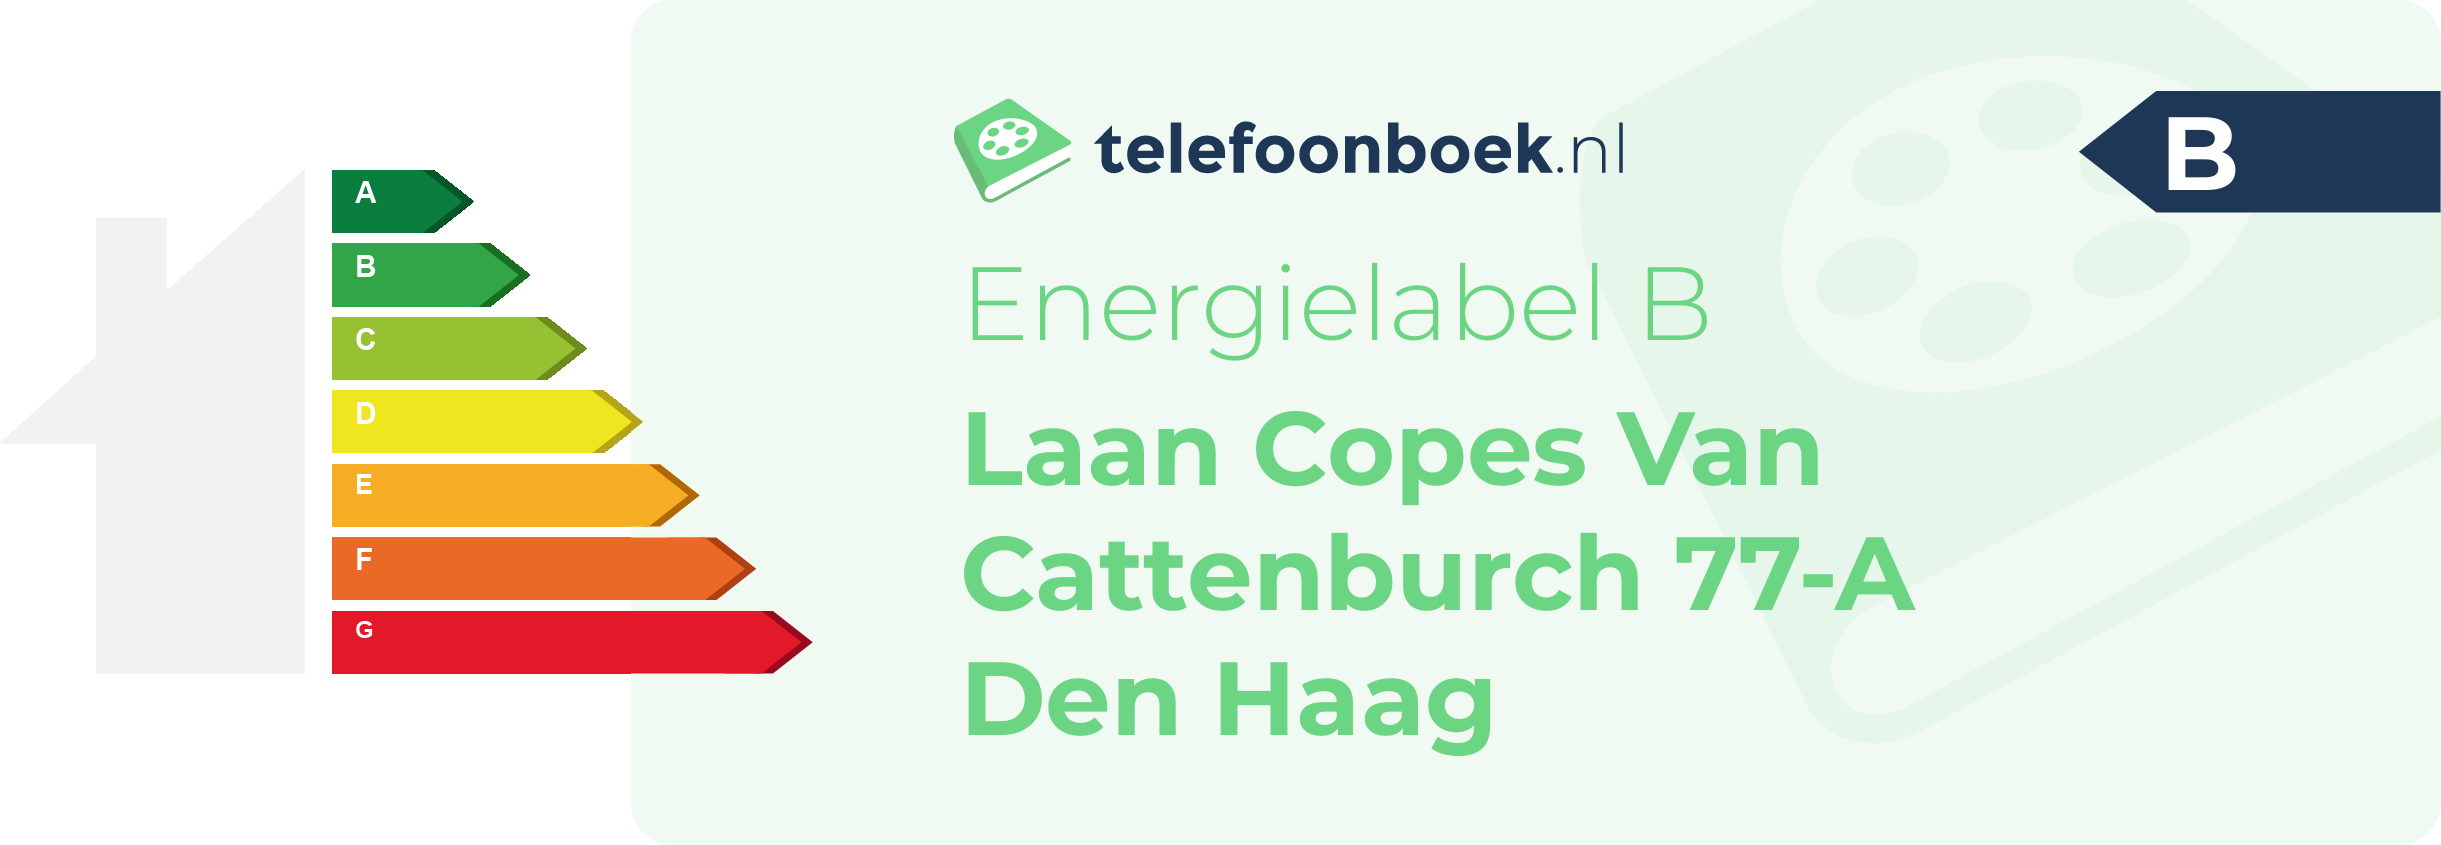 Energielabel Laan Copes Van Cattenburch 77-A Den Haag